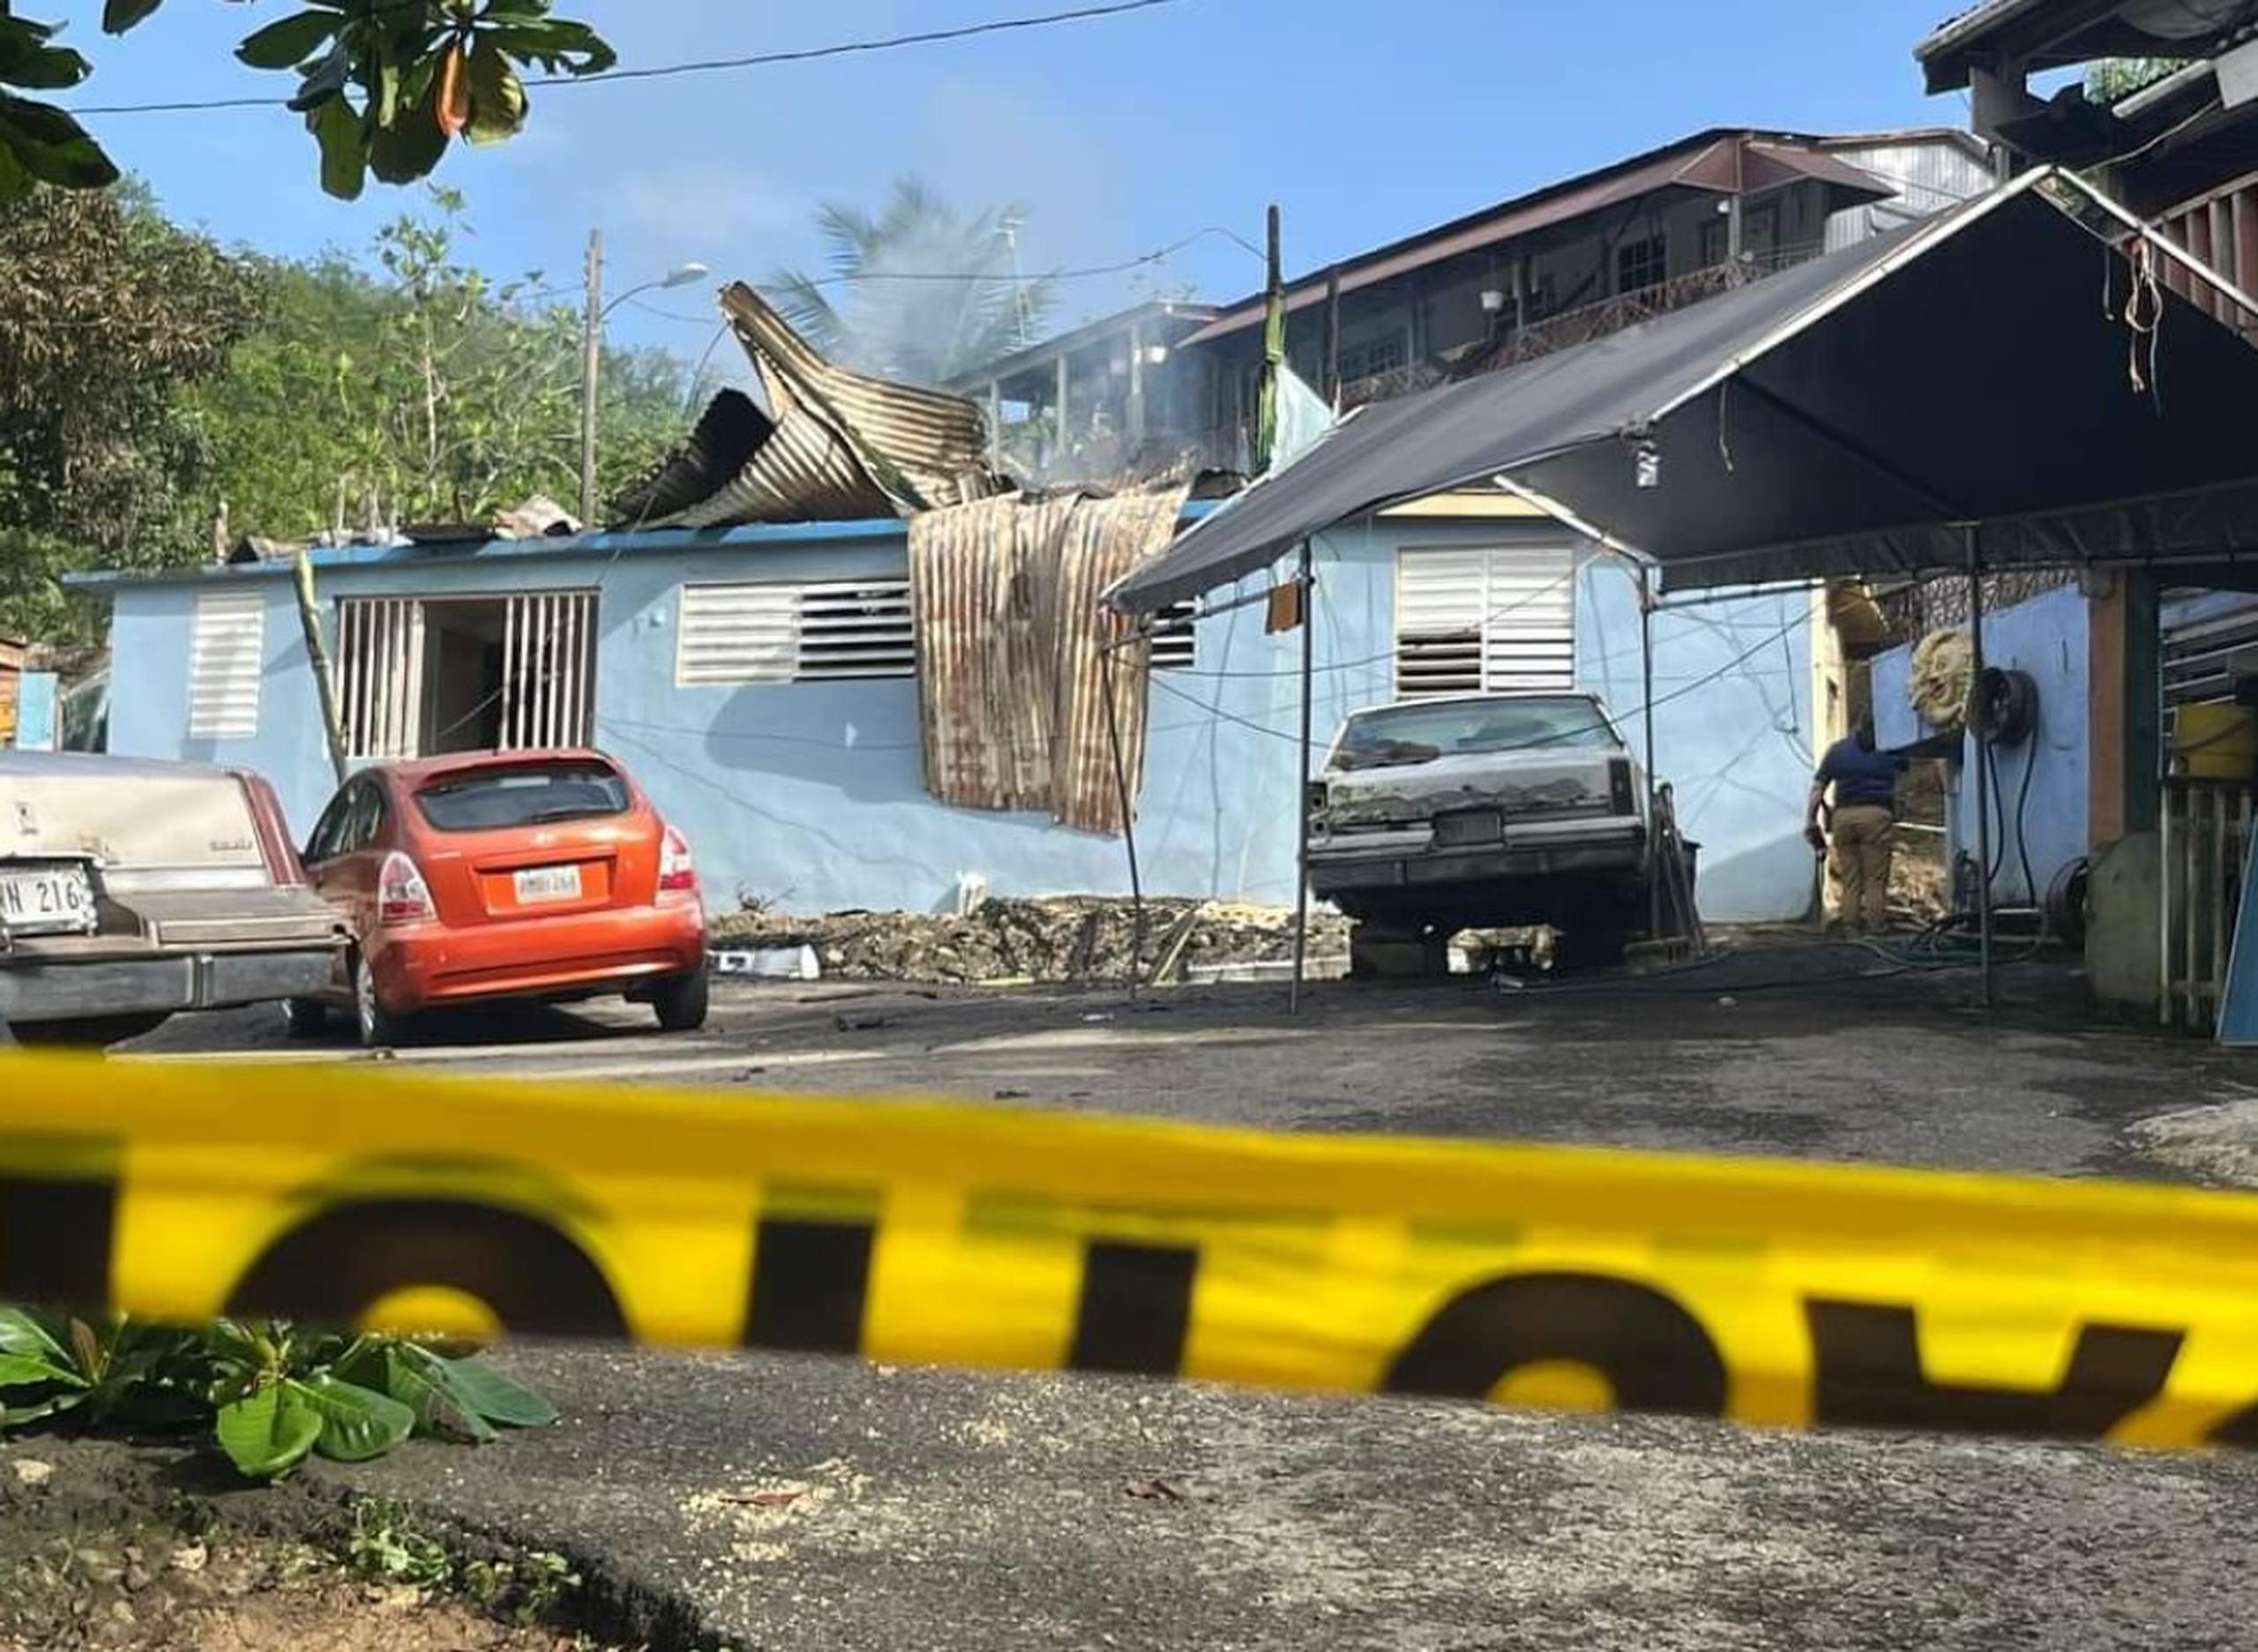 Tres adultos mayores que eran hermanos murieron en la noche del miércoles al incendiarse su residencia en San Germán.